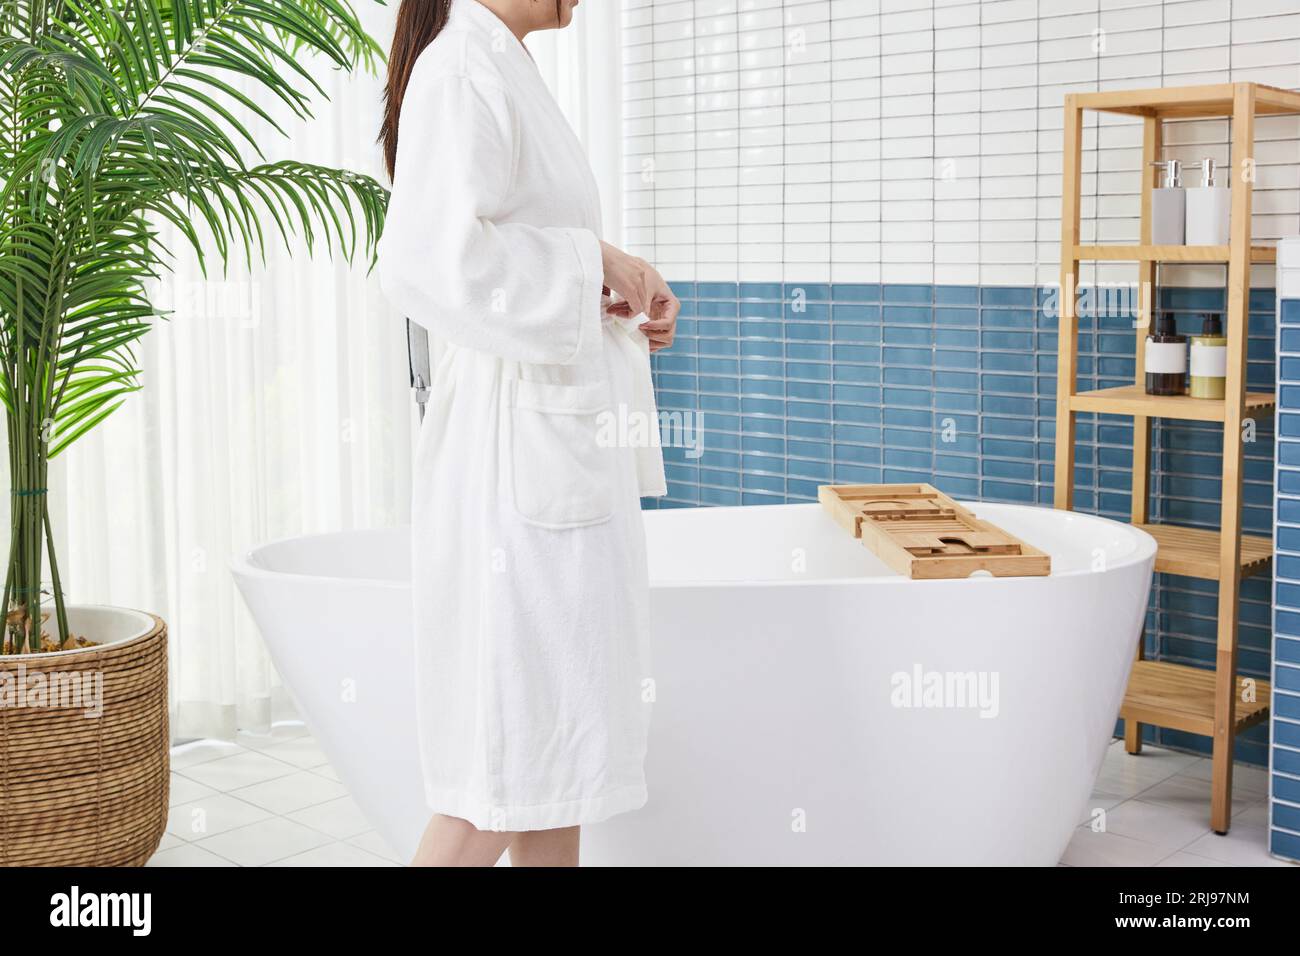 Beauty Concept Foto von koreanischer asain schöne Frau in einem Bademantel in einem Badezimmer mit Badewanne Stockfoto